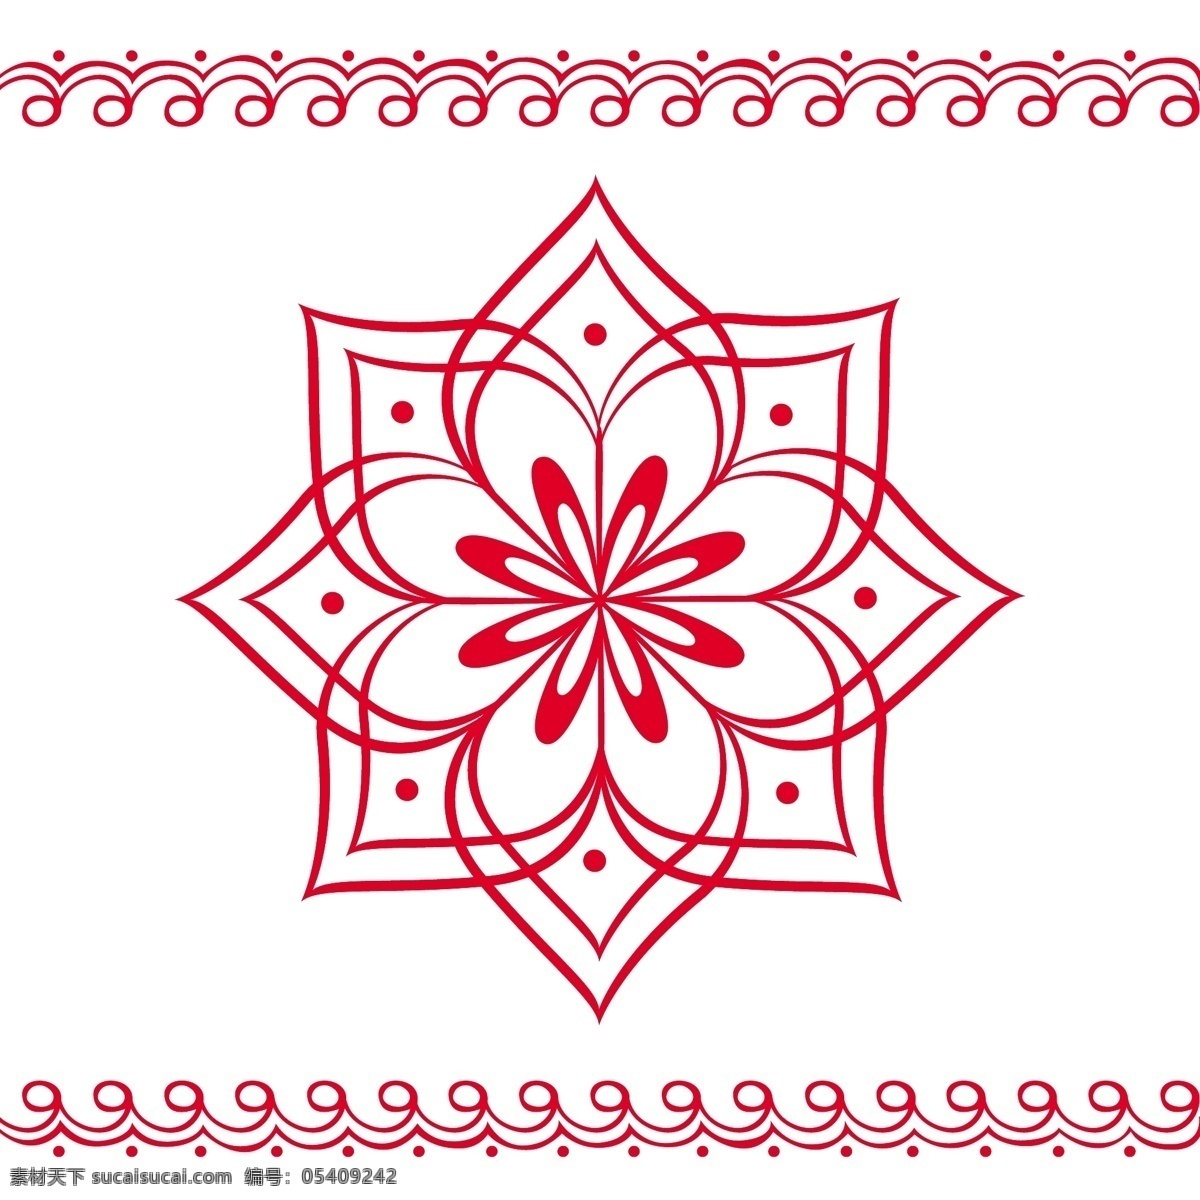 印度花饰 花 装饰 自然 叶 饰品 印度 莲花 植物 花饰 元 印度教 芙蓉花 指甲花 白色